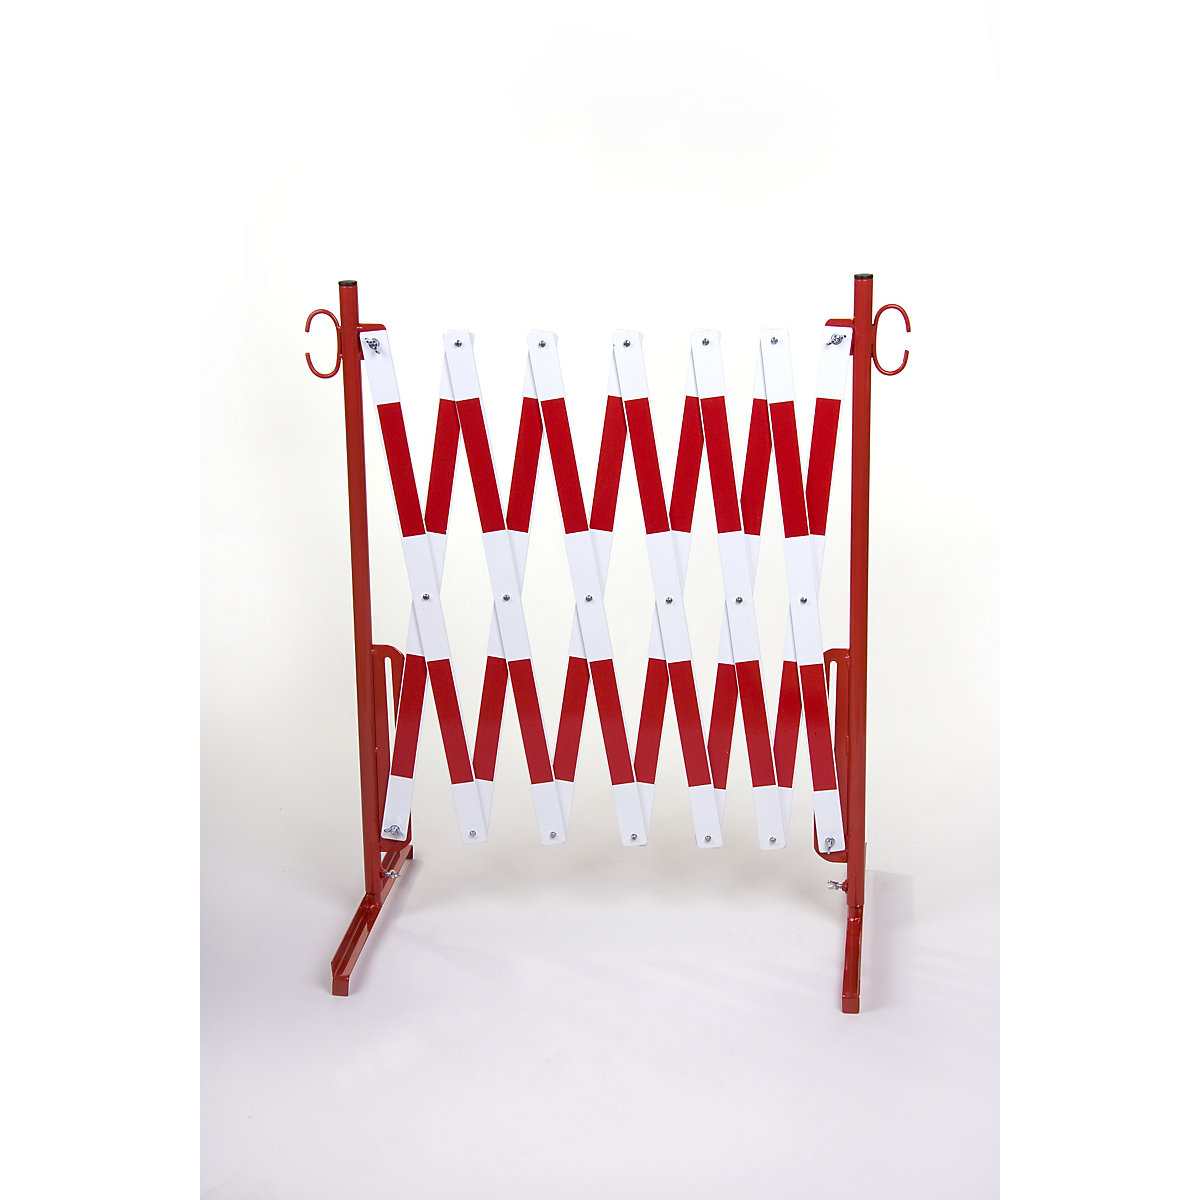 Barriera a pantografo, con 2 piedini, rifrangente, rosso / bianco, lunghezza max 4000 mm-4